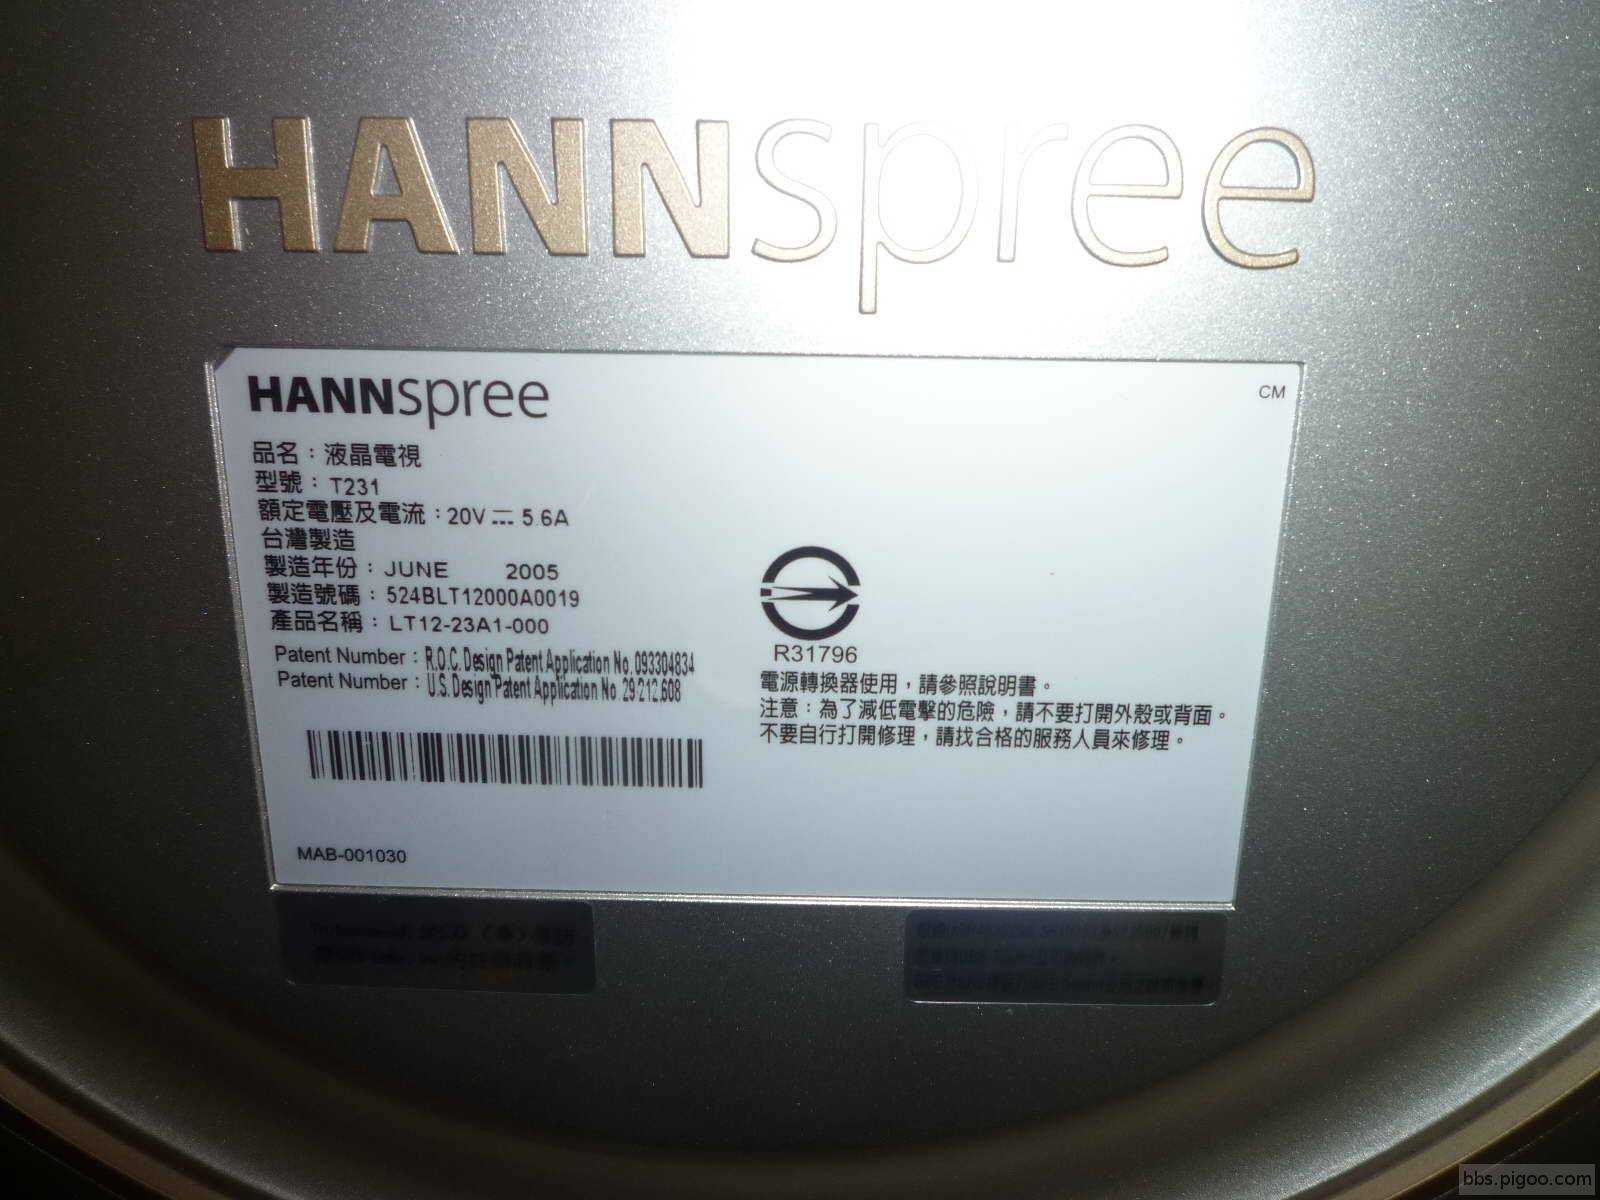 瀚斯寶麗HANNspree、型號 T231 、產品名稱LT12-23A1-000、23吋面板.jpg